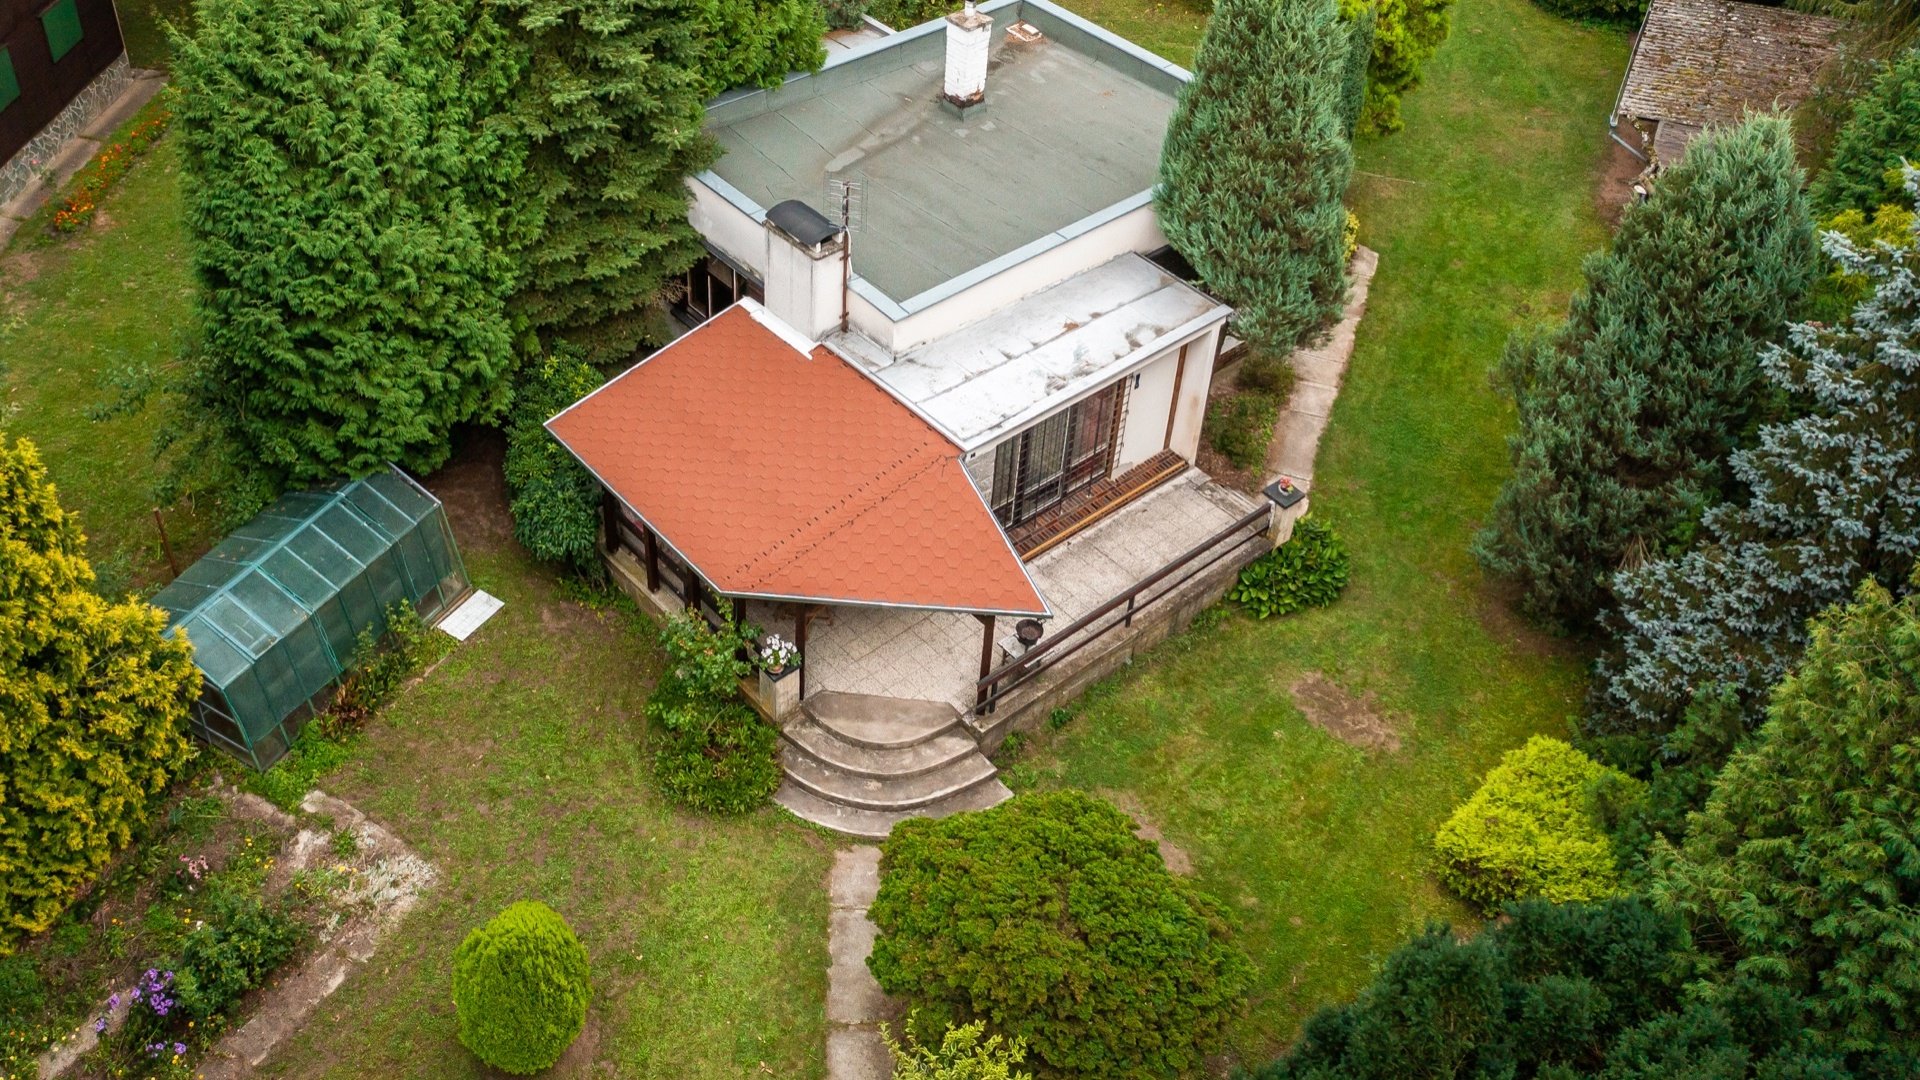 Prodej chaty 93 m² (zastavěná plocha včetně terasy) se zahradou 1423 m², přímo u Labe - Oseček